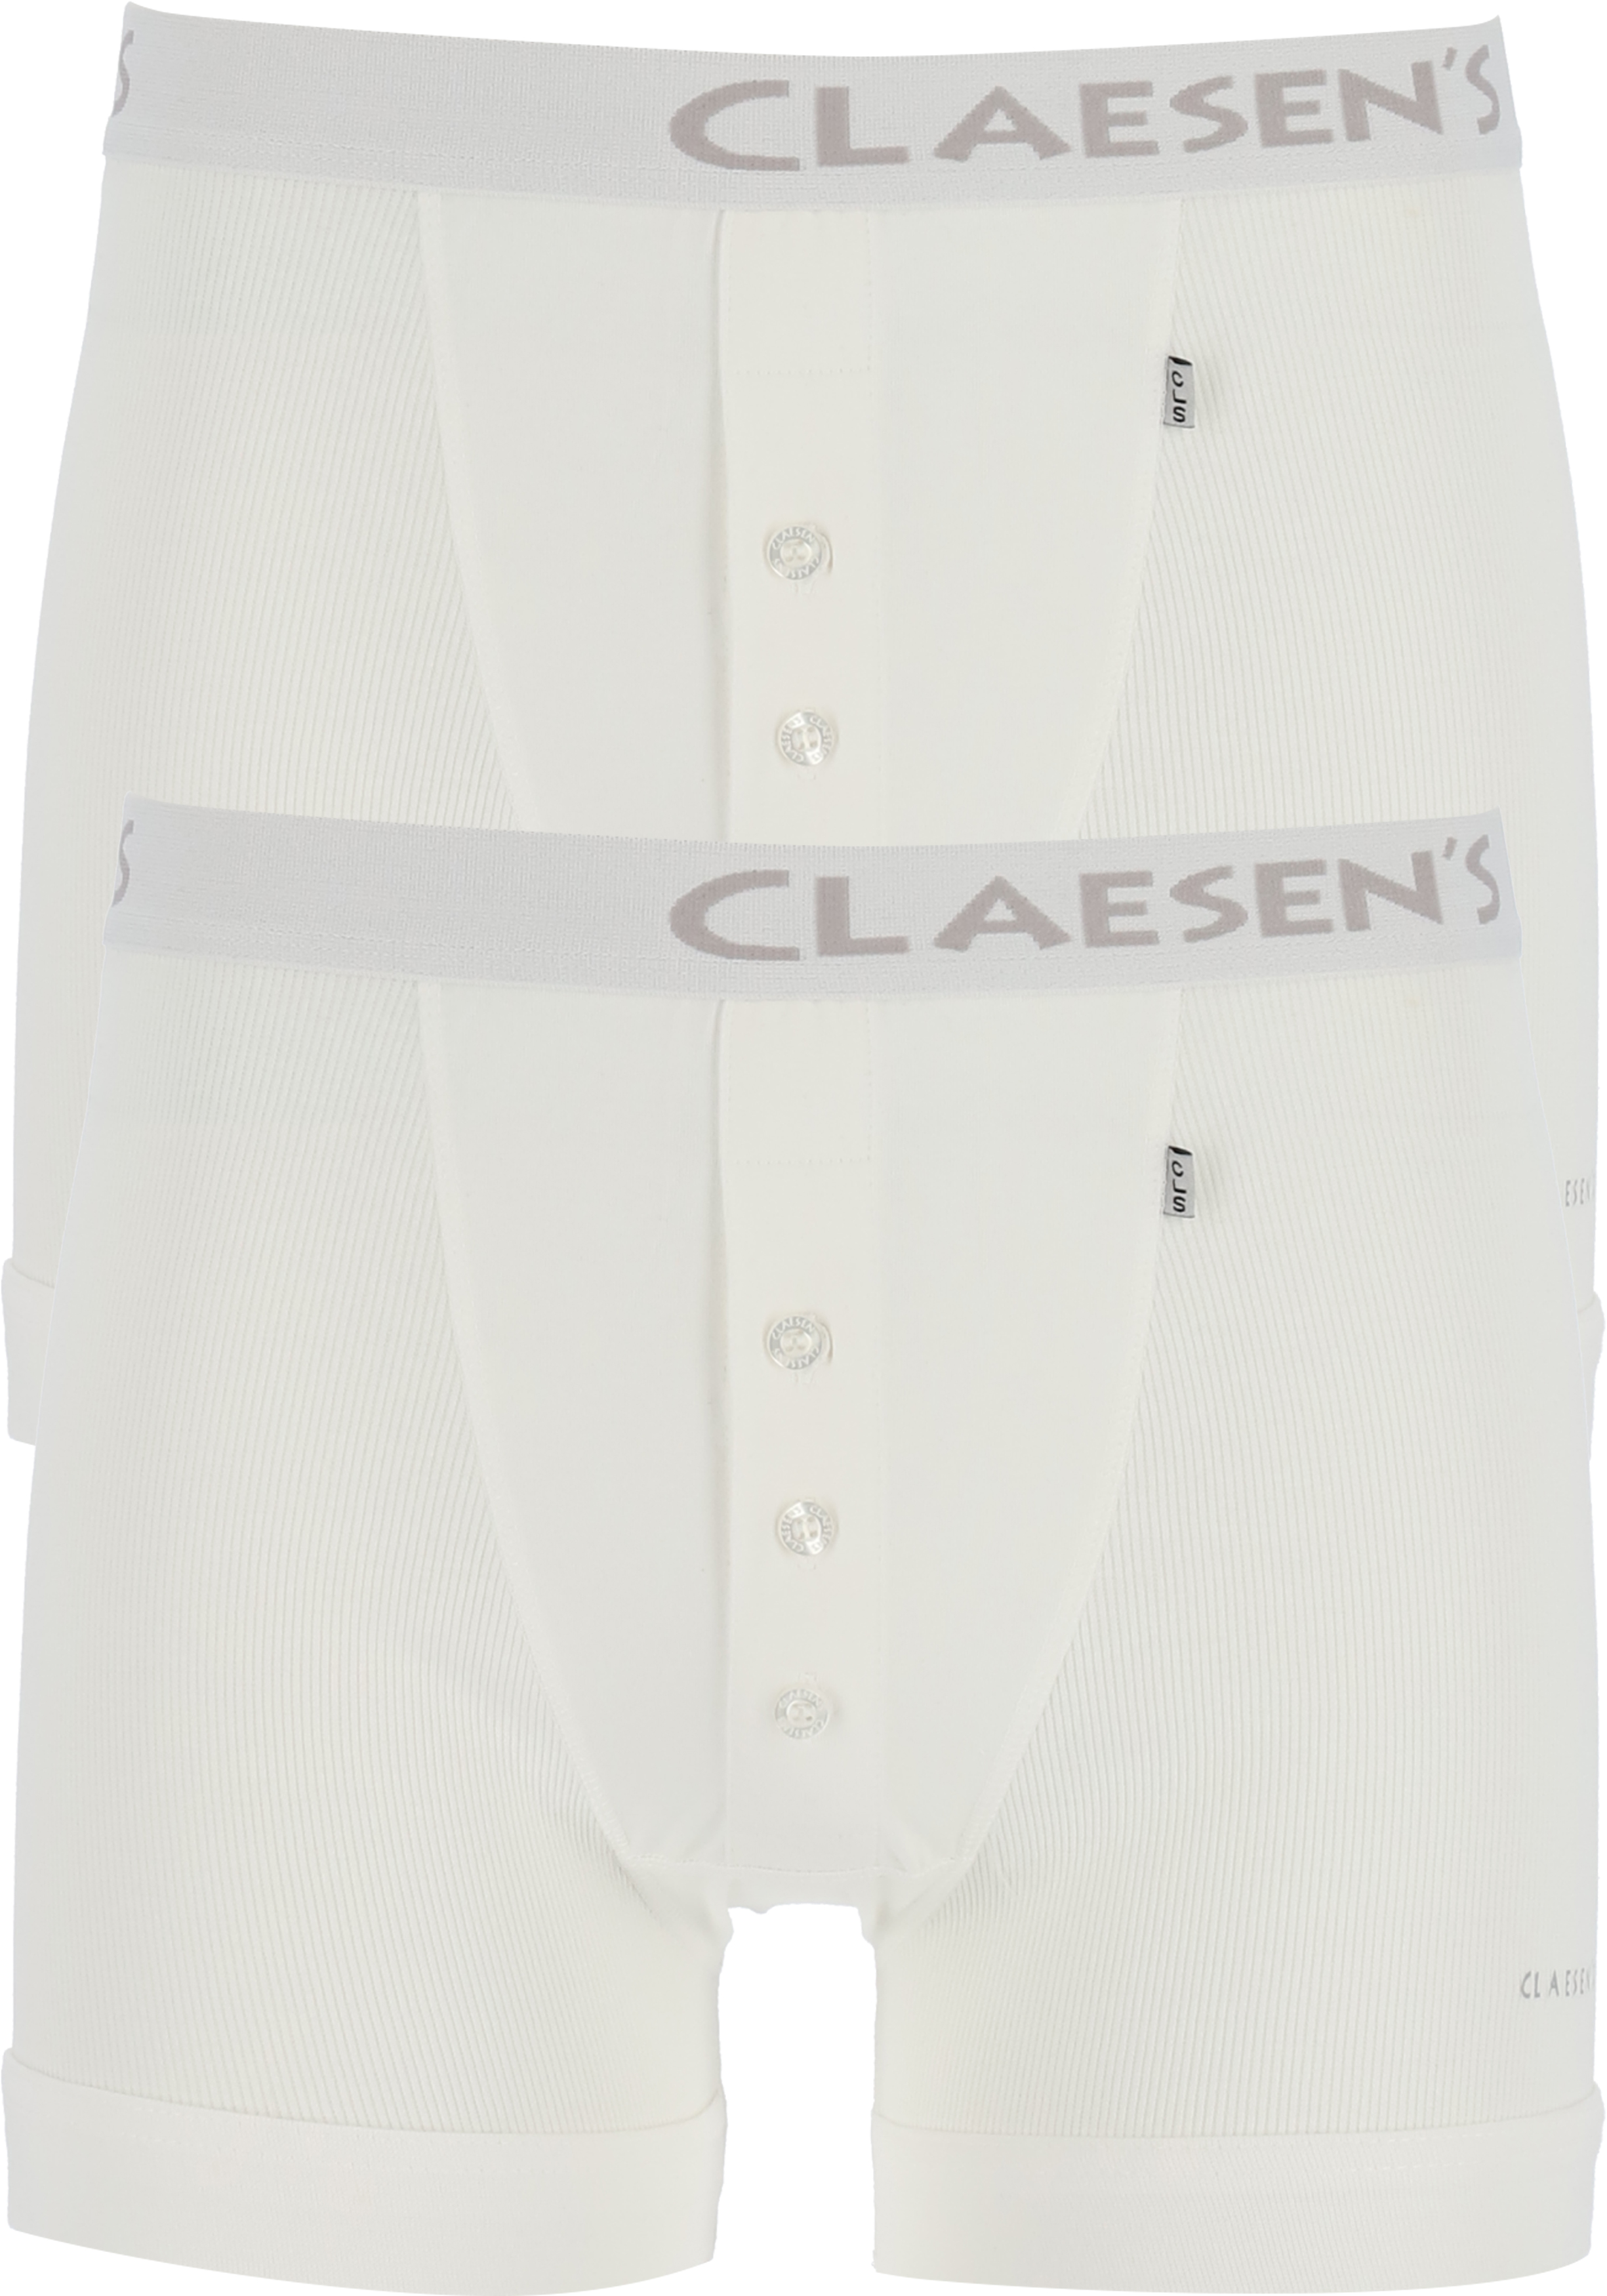 Claesen's Basics boxers (2-pack), retro rib heren boxers met gulp, wit